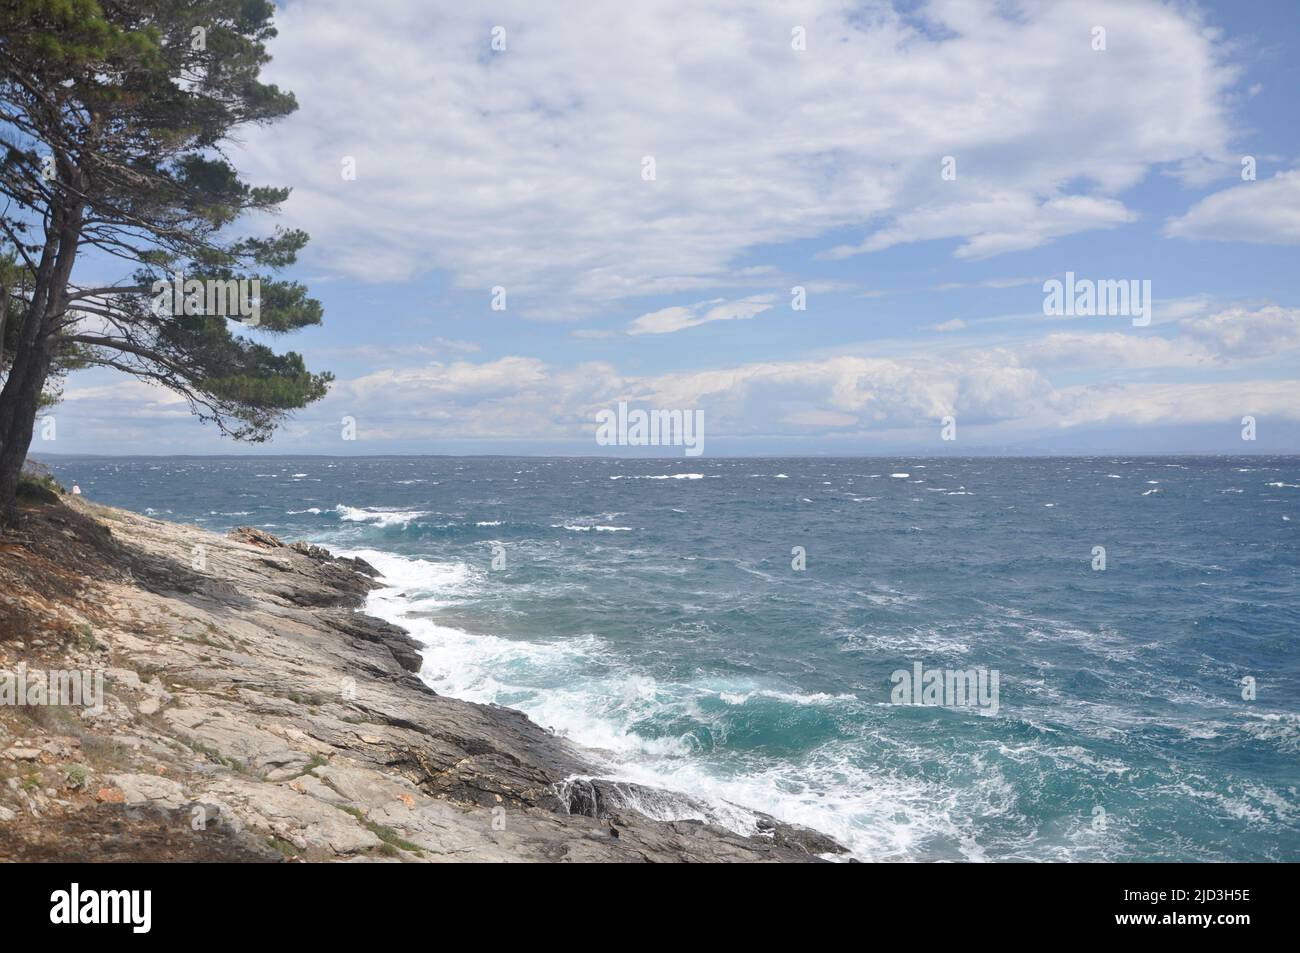 Vista panoramica sul mare adriatico e le onde tempestose che si infrangono sulla costa. Stupendo e stupefacente paesaggio marino, le onde si infrangono sulle rocce durante una tempesta Foto Stock